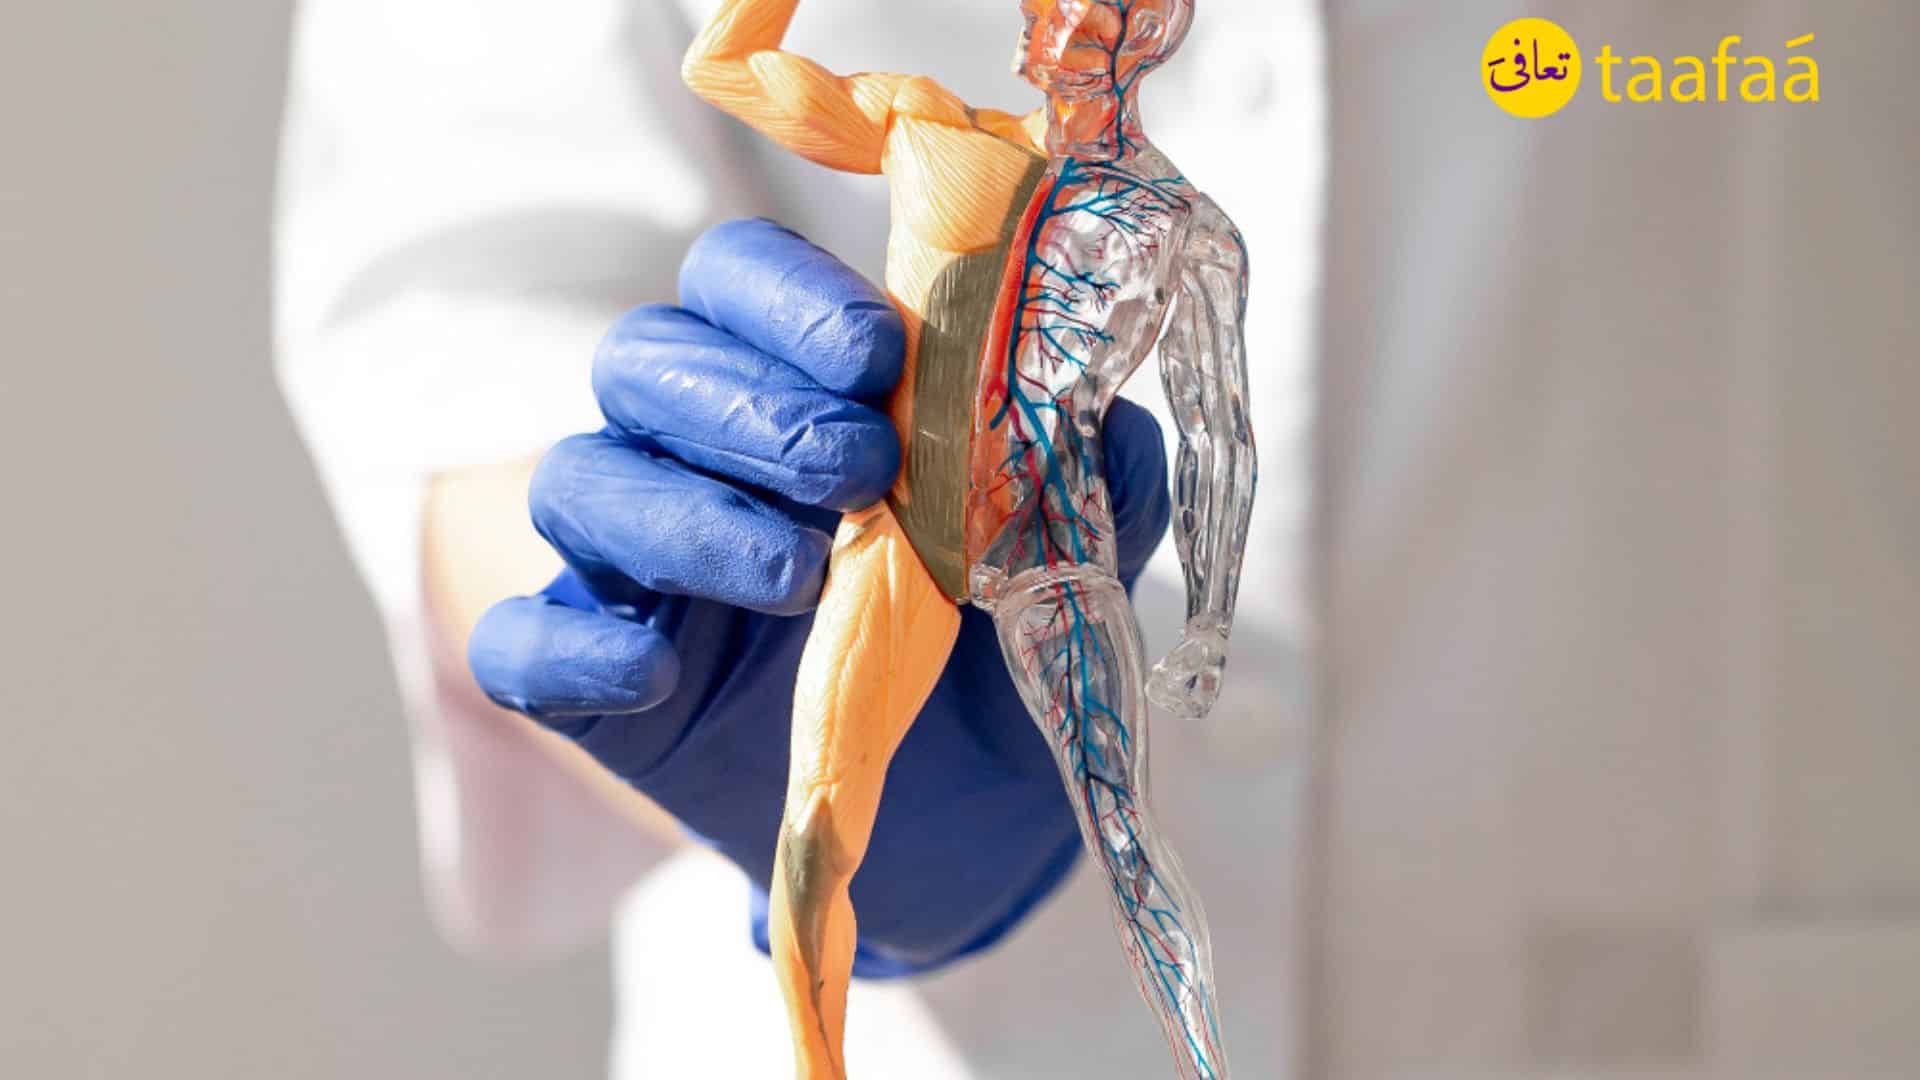 ما هي أكثر عمليات جراحة العظام شيوعا في سلطنة عمان